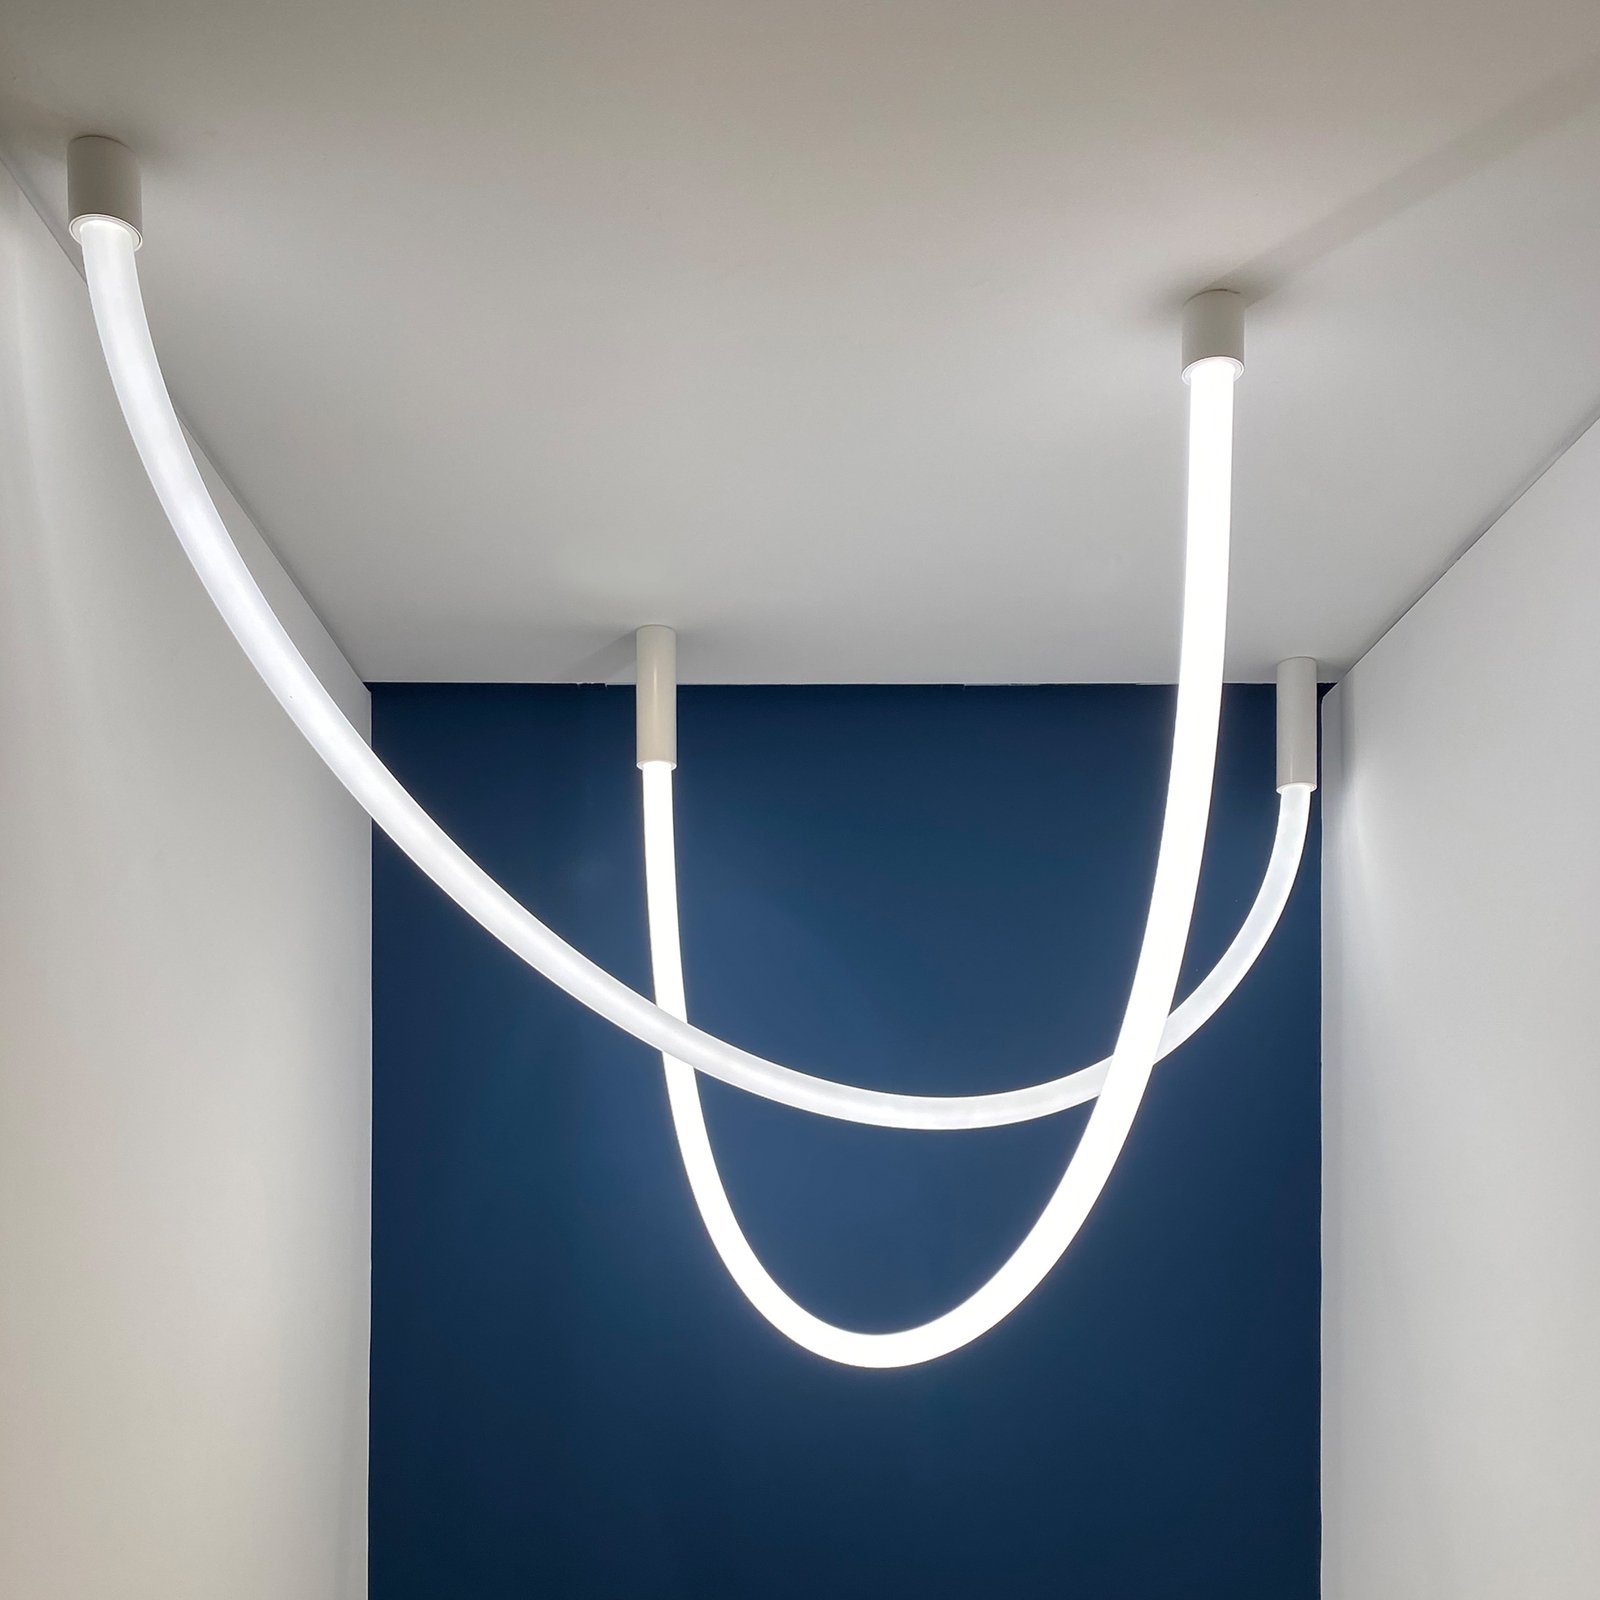 Artemide La linea SMD svetelná LED hadica, 5 m